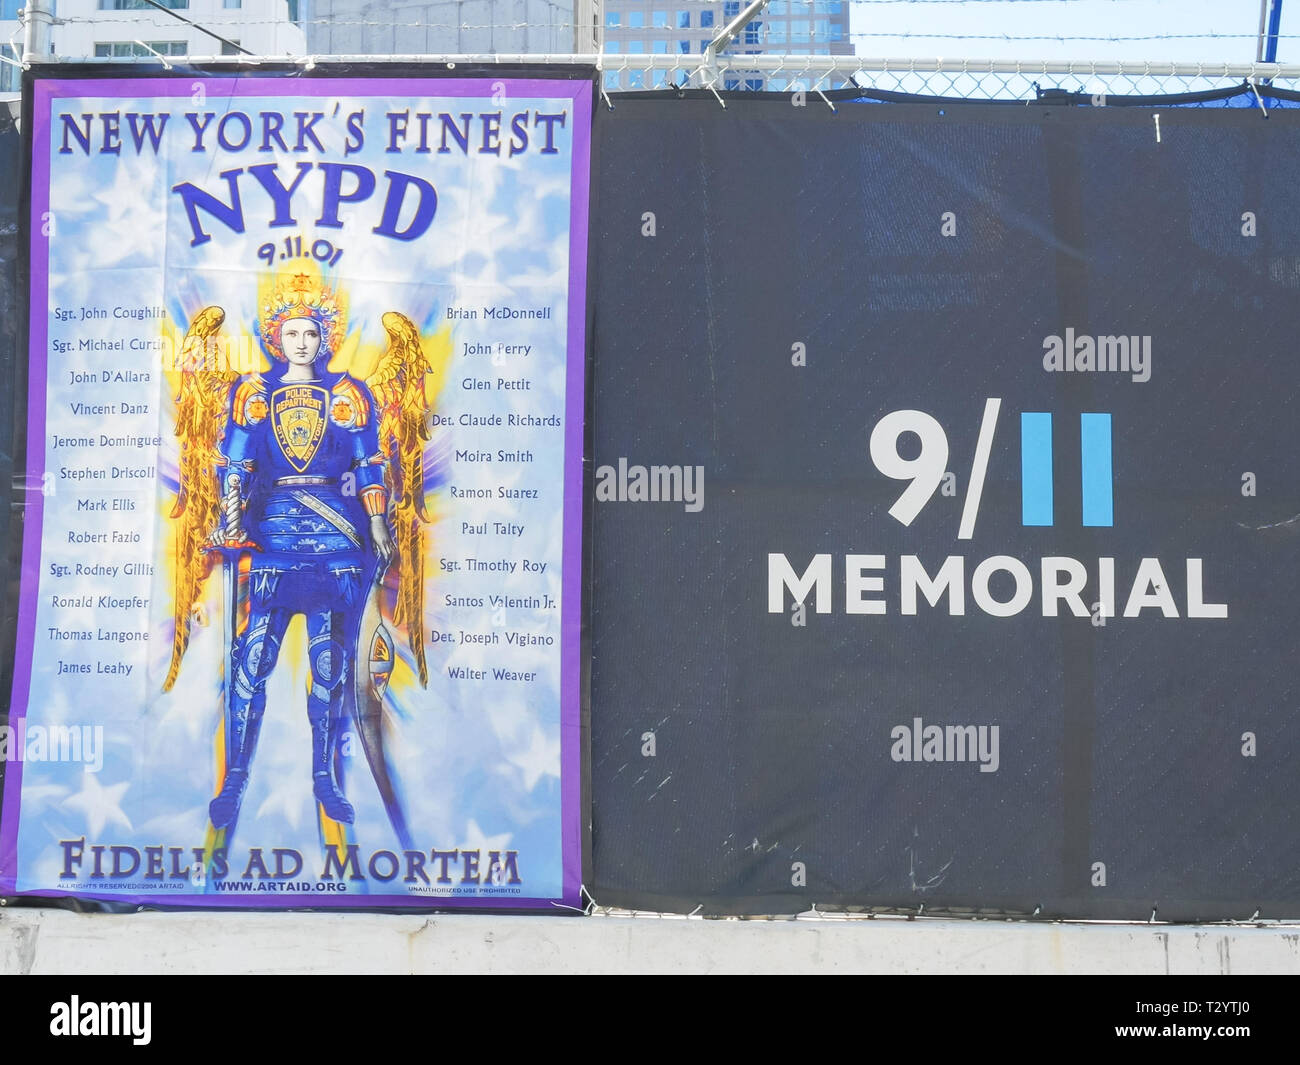 NEW YORK, NEW YORK, USA - 15 septembre 2015 : une bannière commémorative à ny les pompiers tués le 11 septembre à new york city Banque D'Images